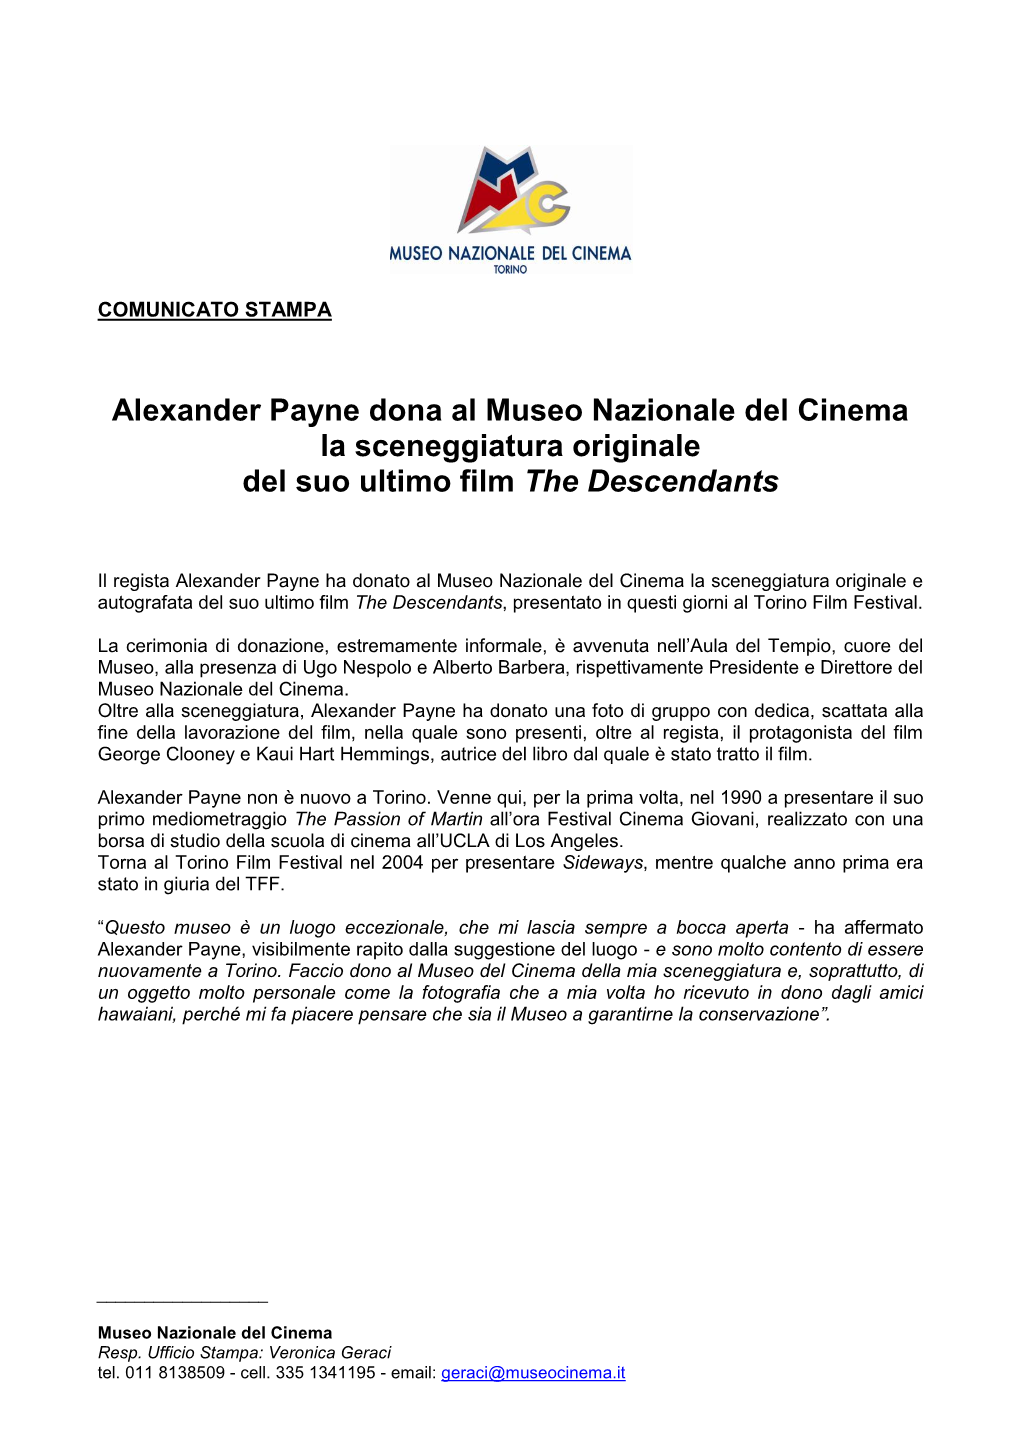 Alexander Payne Dona Al Museo Nazionale Del Cinema La Sceneggiatura Originale Del Suo Ultimo Film the Descendants